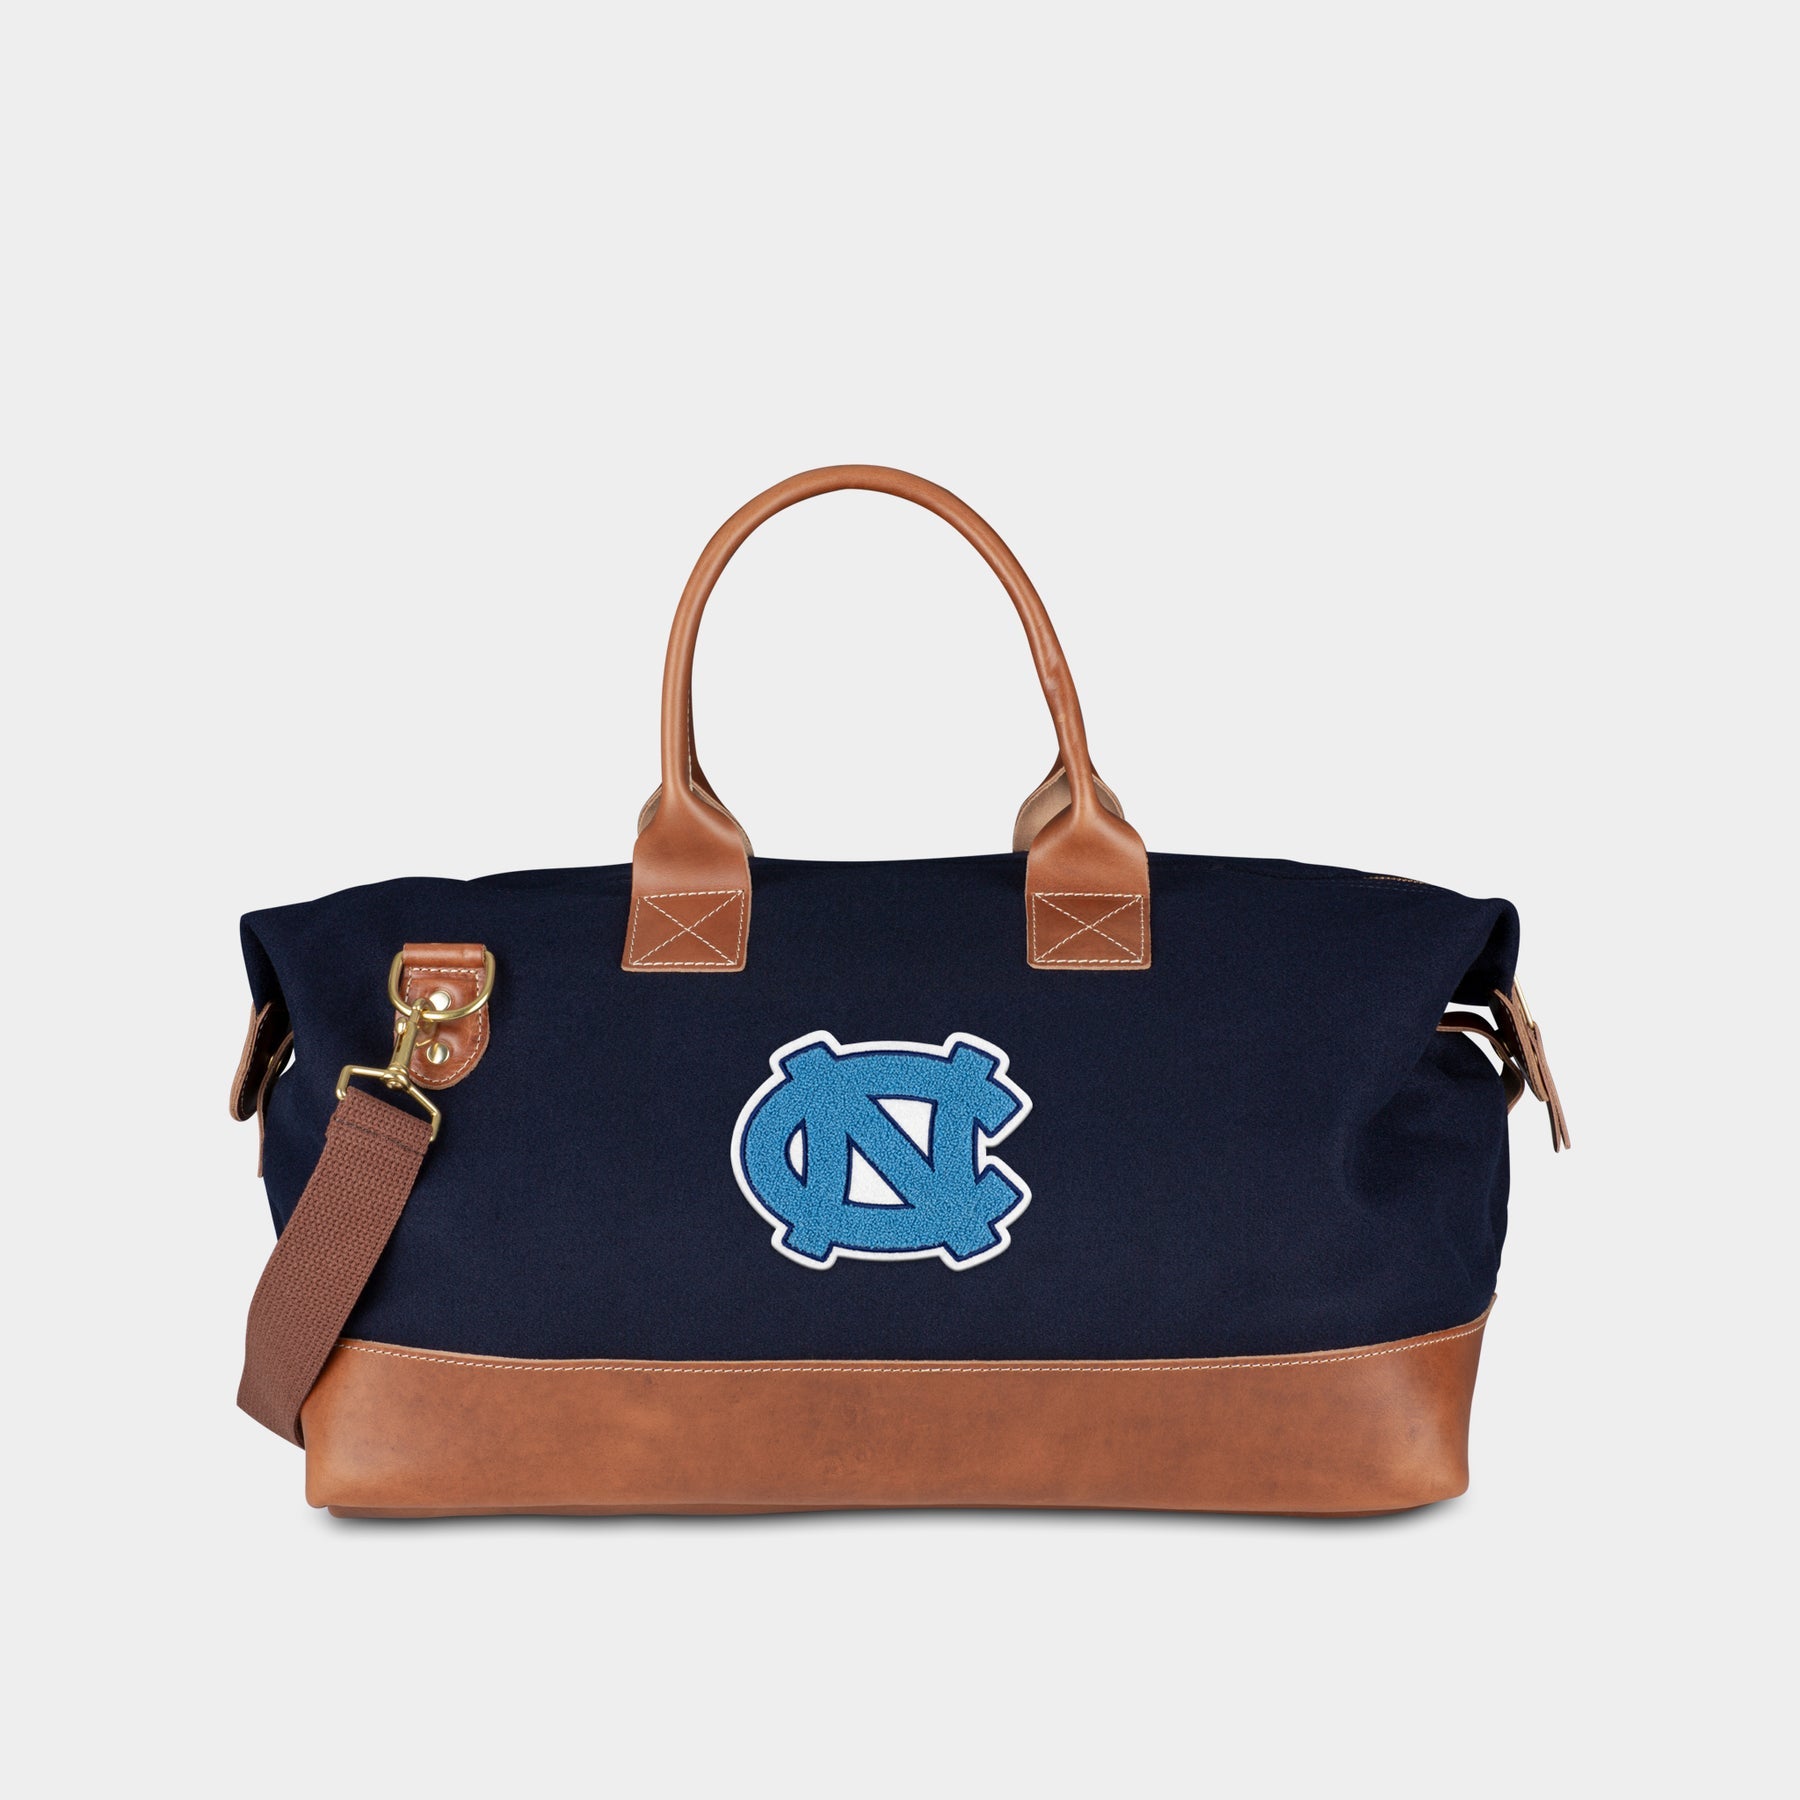 UNC "NC" Weekender Duffle Bag in Navy